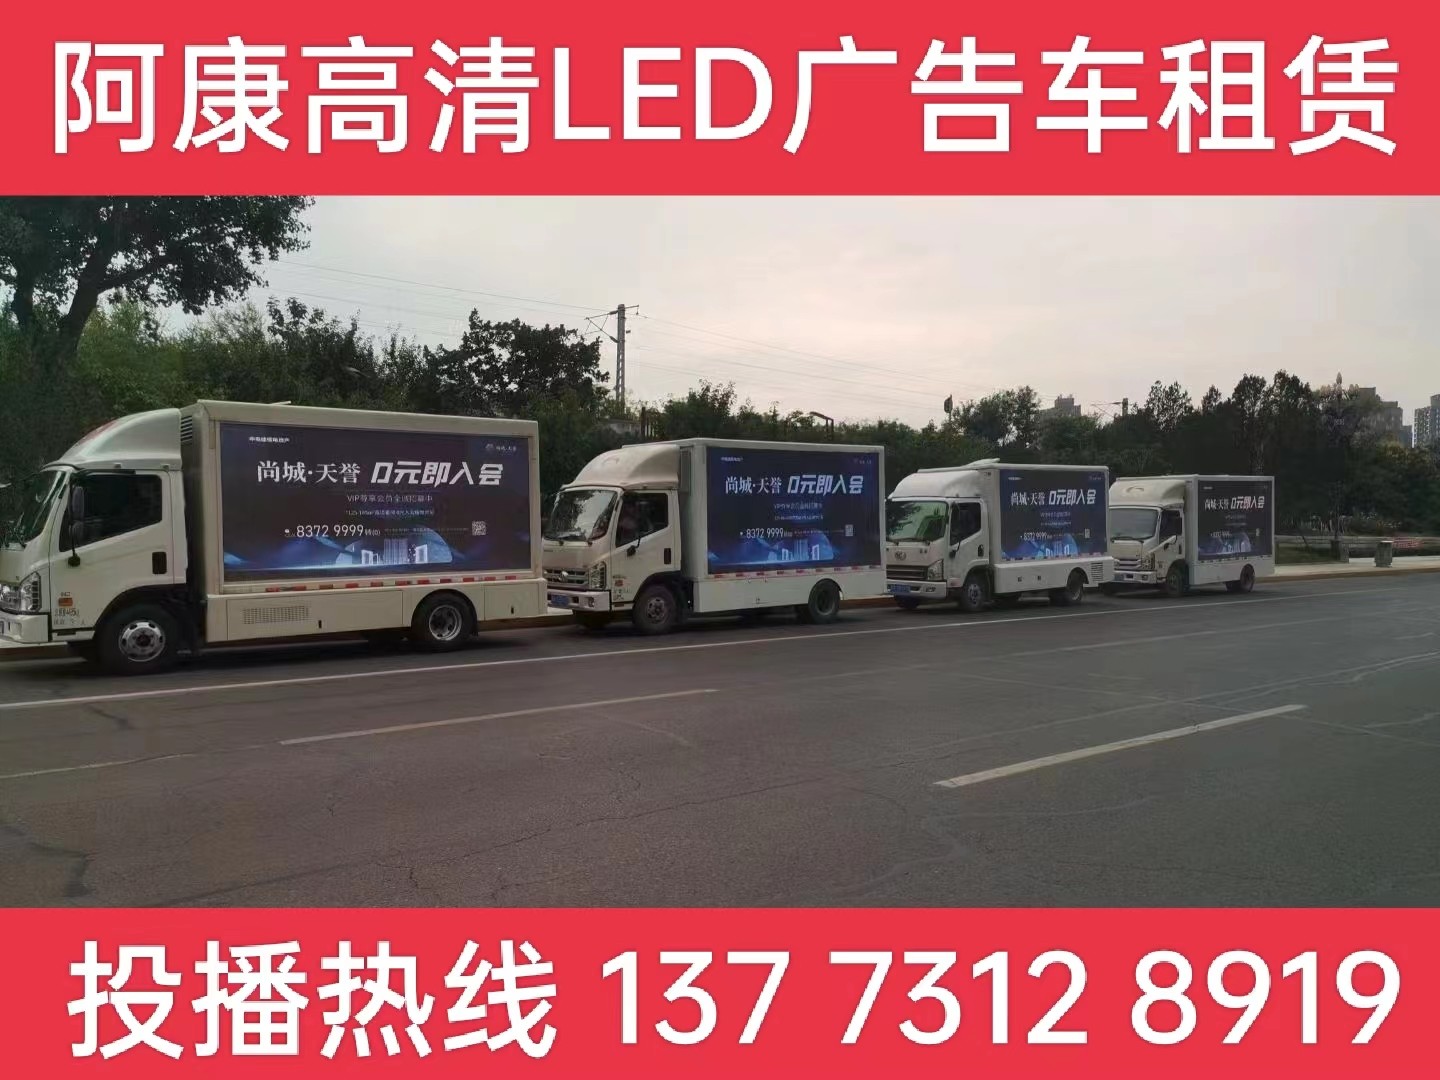 邗江区LED广告车出租公司